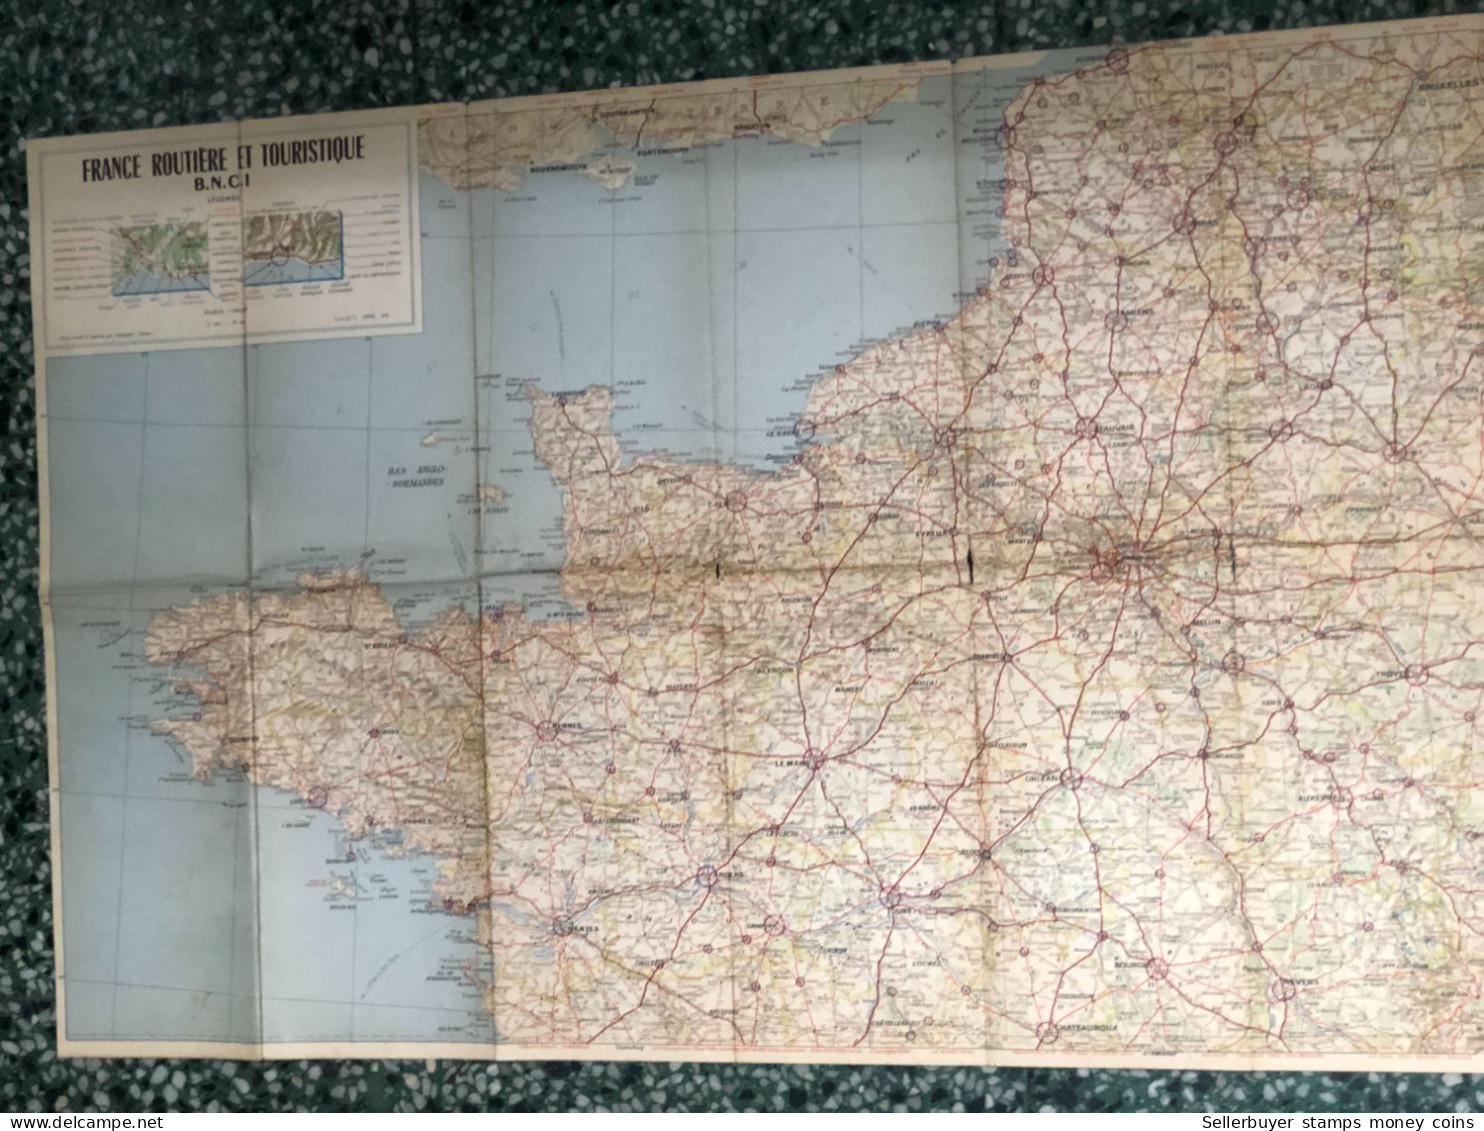 World Maps Old-la France Routiere Et Touristique B N C I Before 1975-1 Pcs - Cartes Topographiques